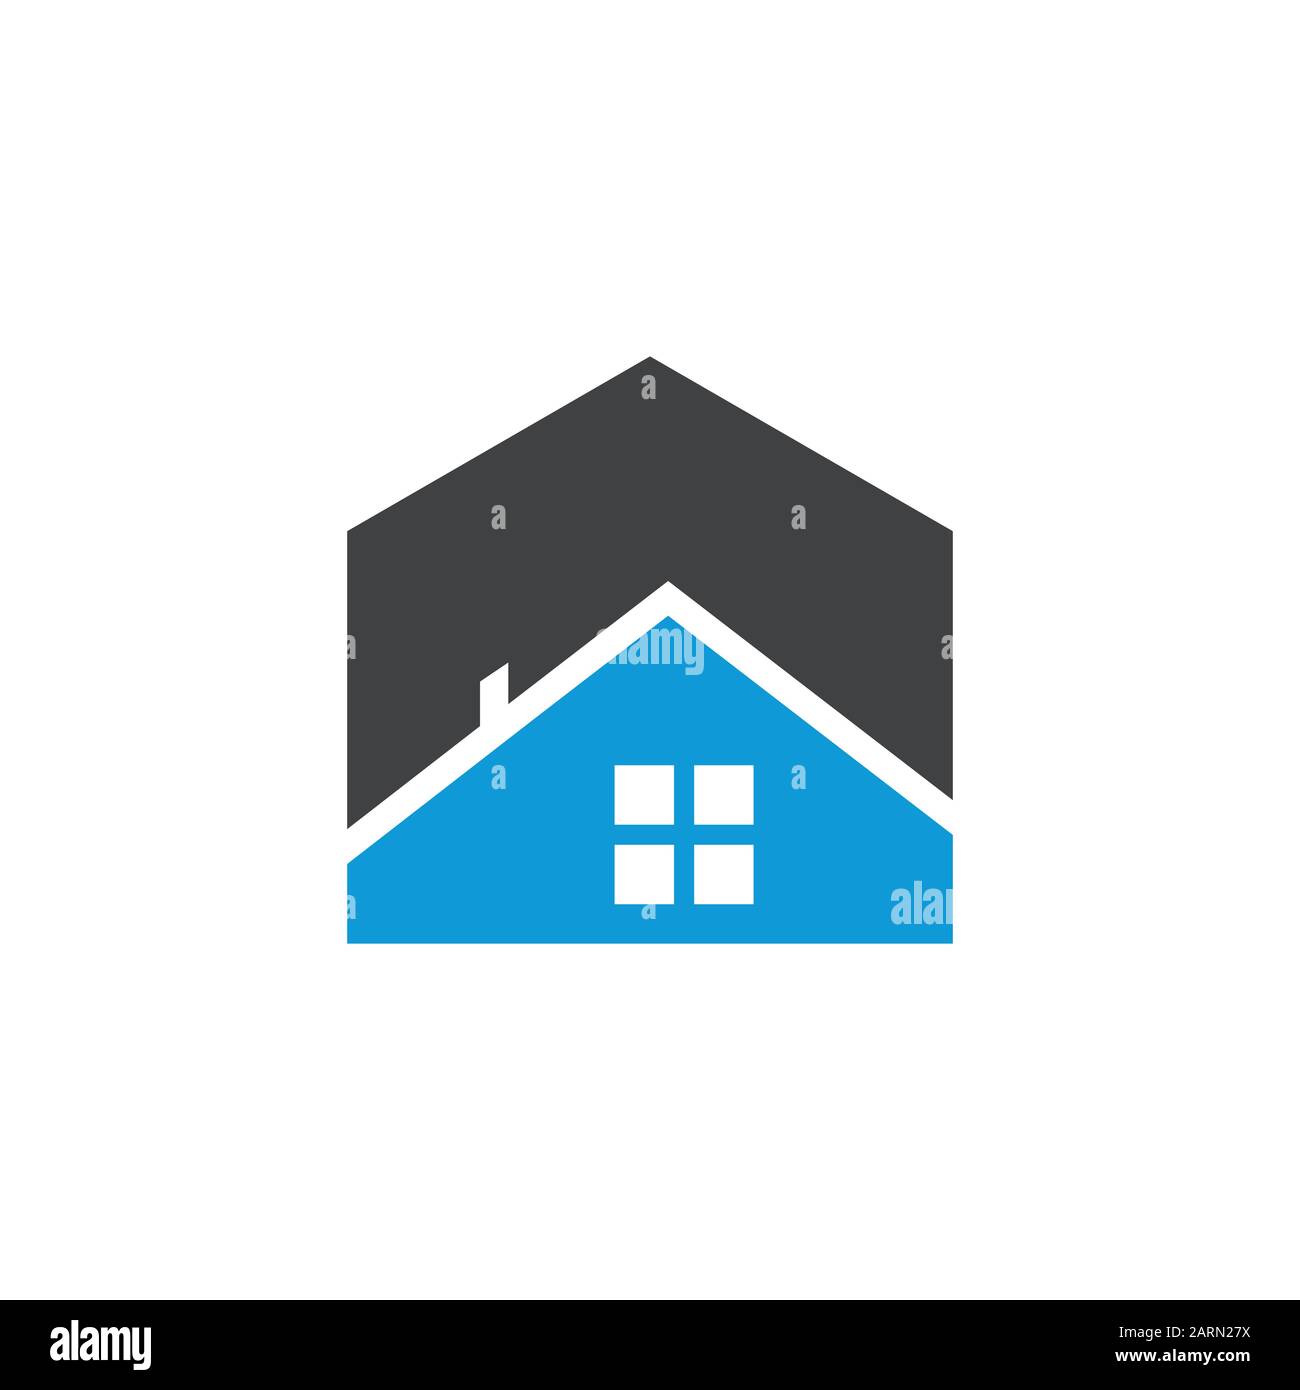 Modèle Vectoriel De Logo Commercial Immobilier. Maison abstraite ou logo de maison. Logo Du Bâtiment, Du Développement Immobilier Et De La Construction. Illustration de Vecteur